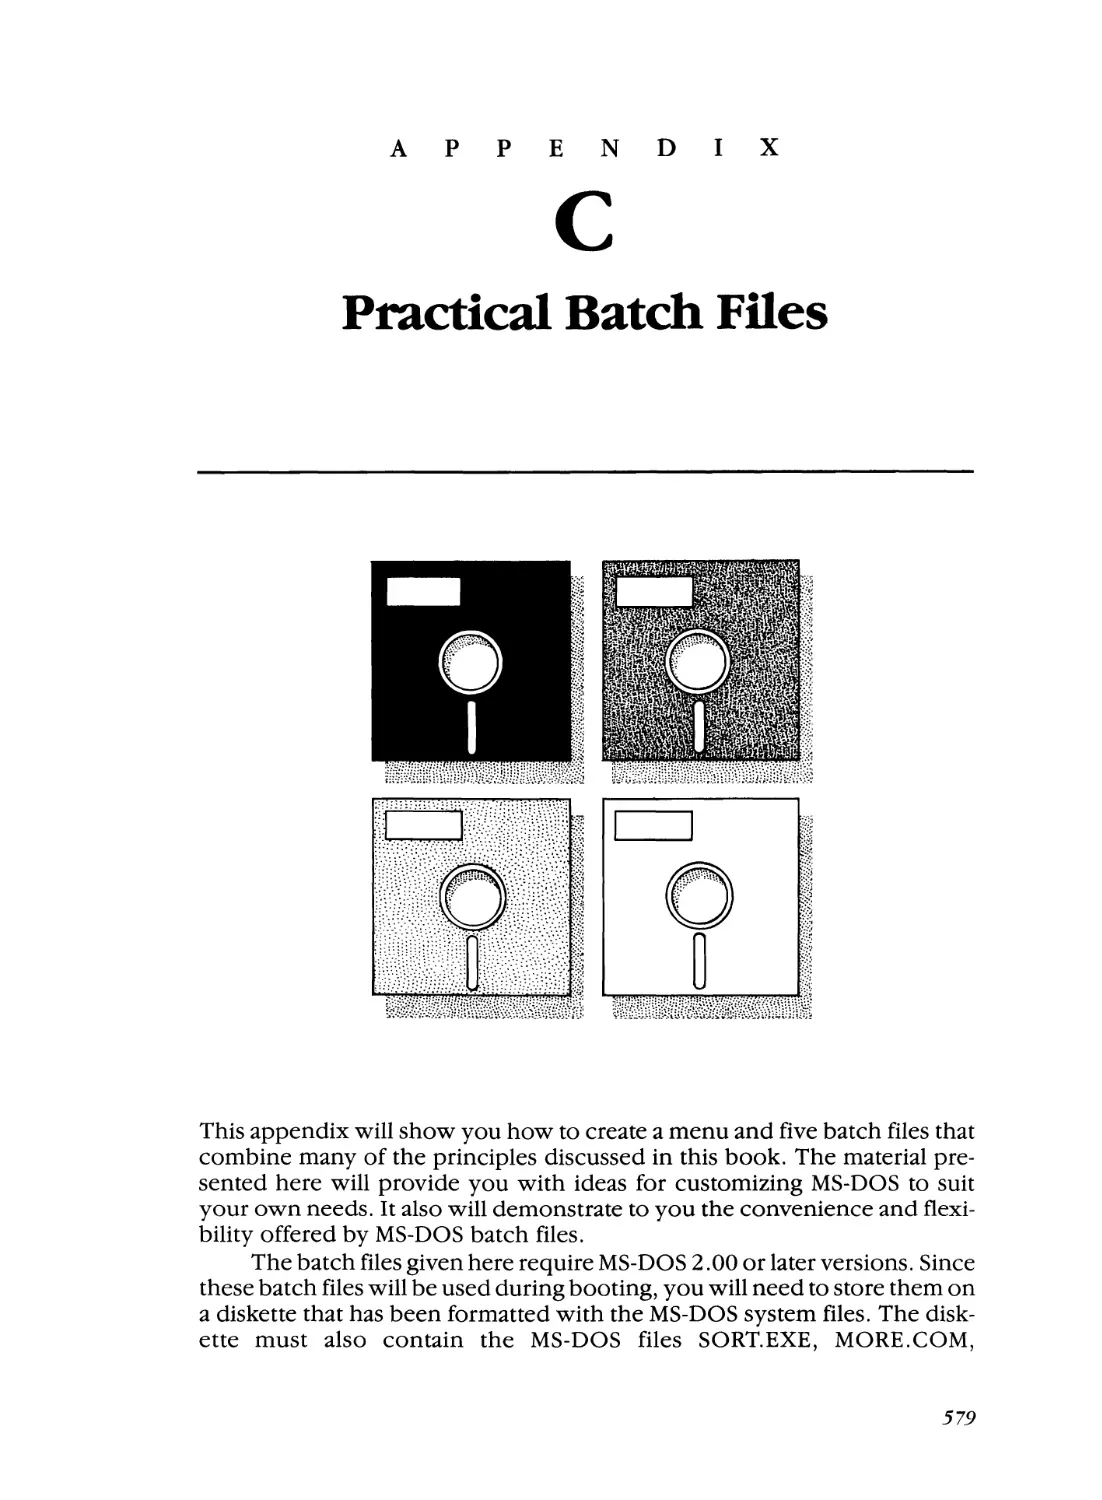 Appendix C - Practical Batch Files